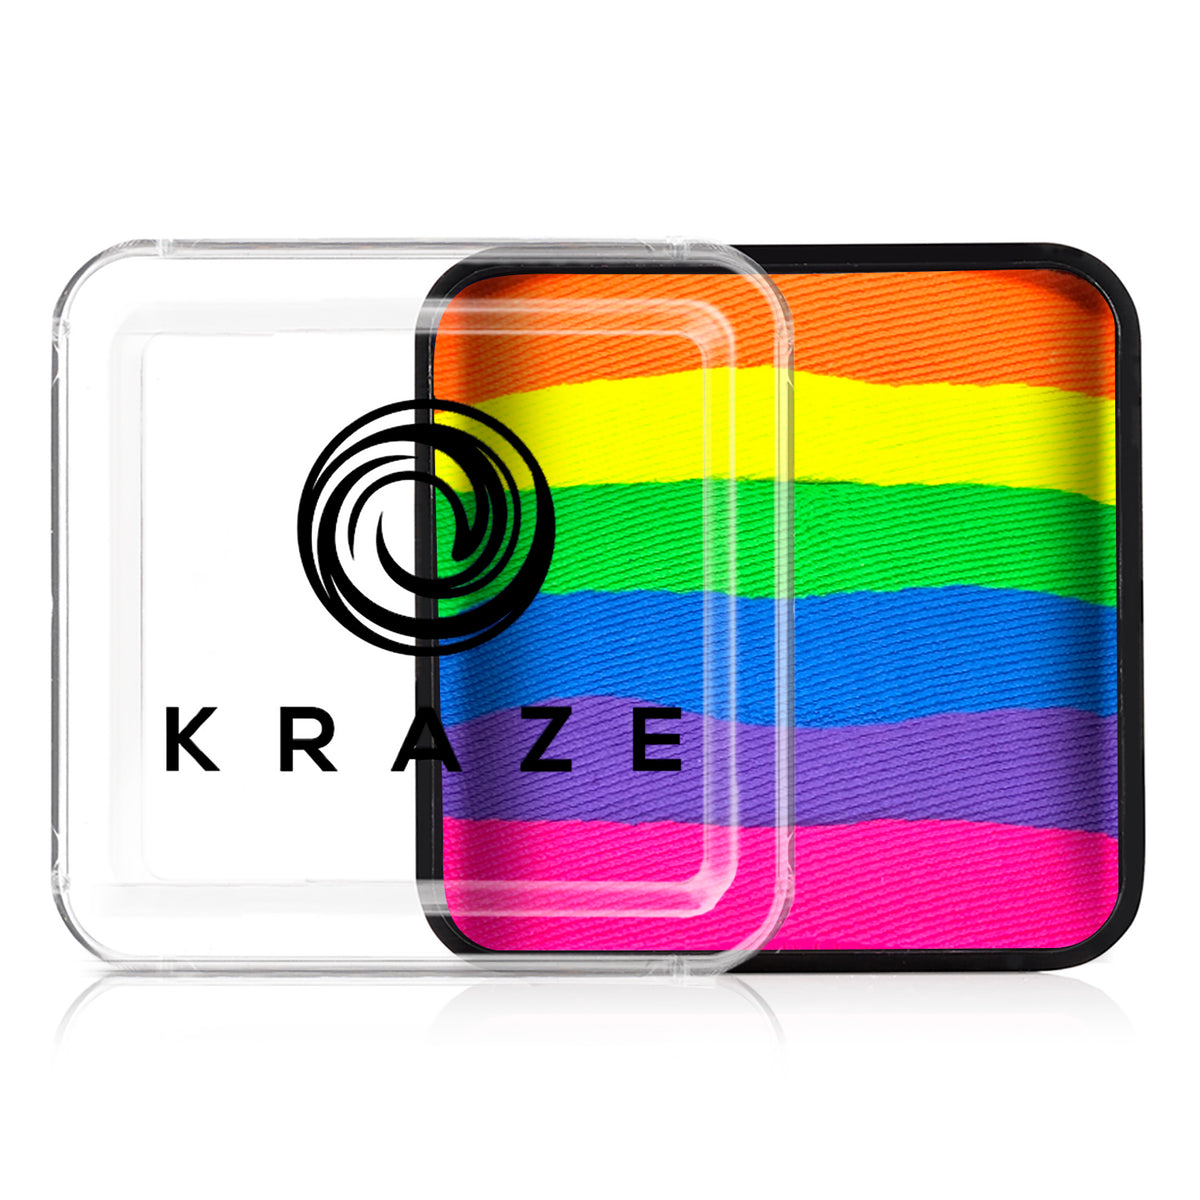 Kraze FX Domed Neon Split Cake - Neon Rave (25 gm)